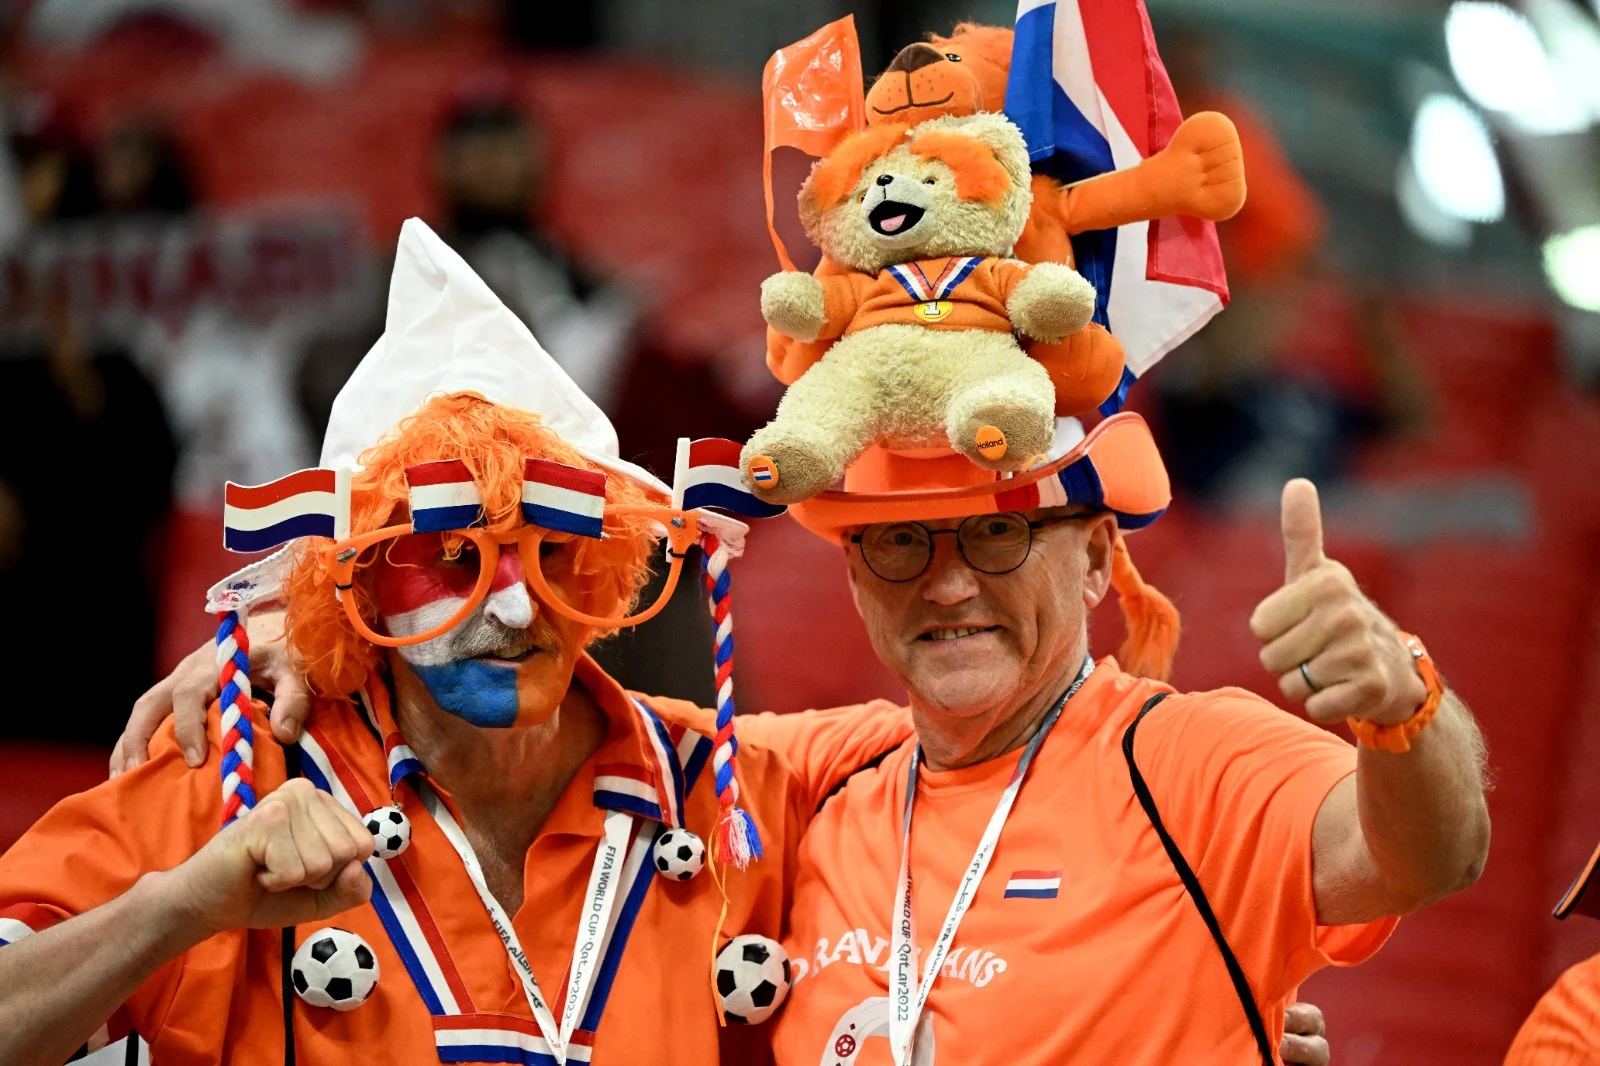 אוהדי נבחרת הולנד מונדיאל 2022 בקטר